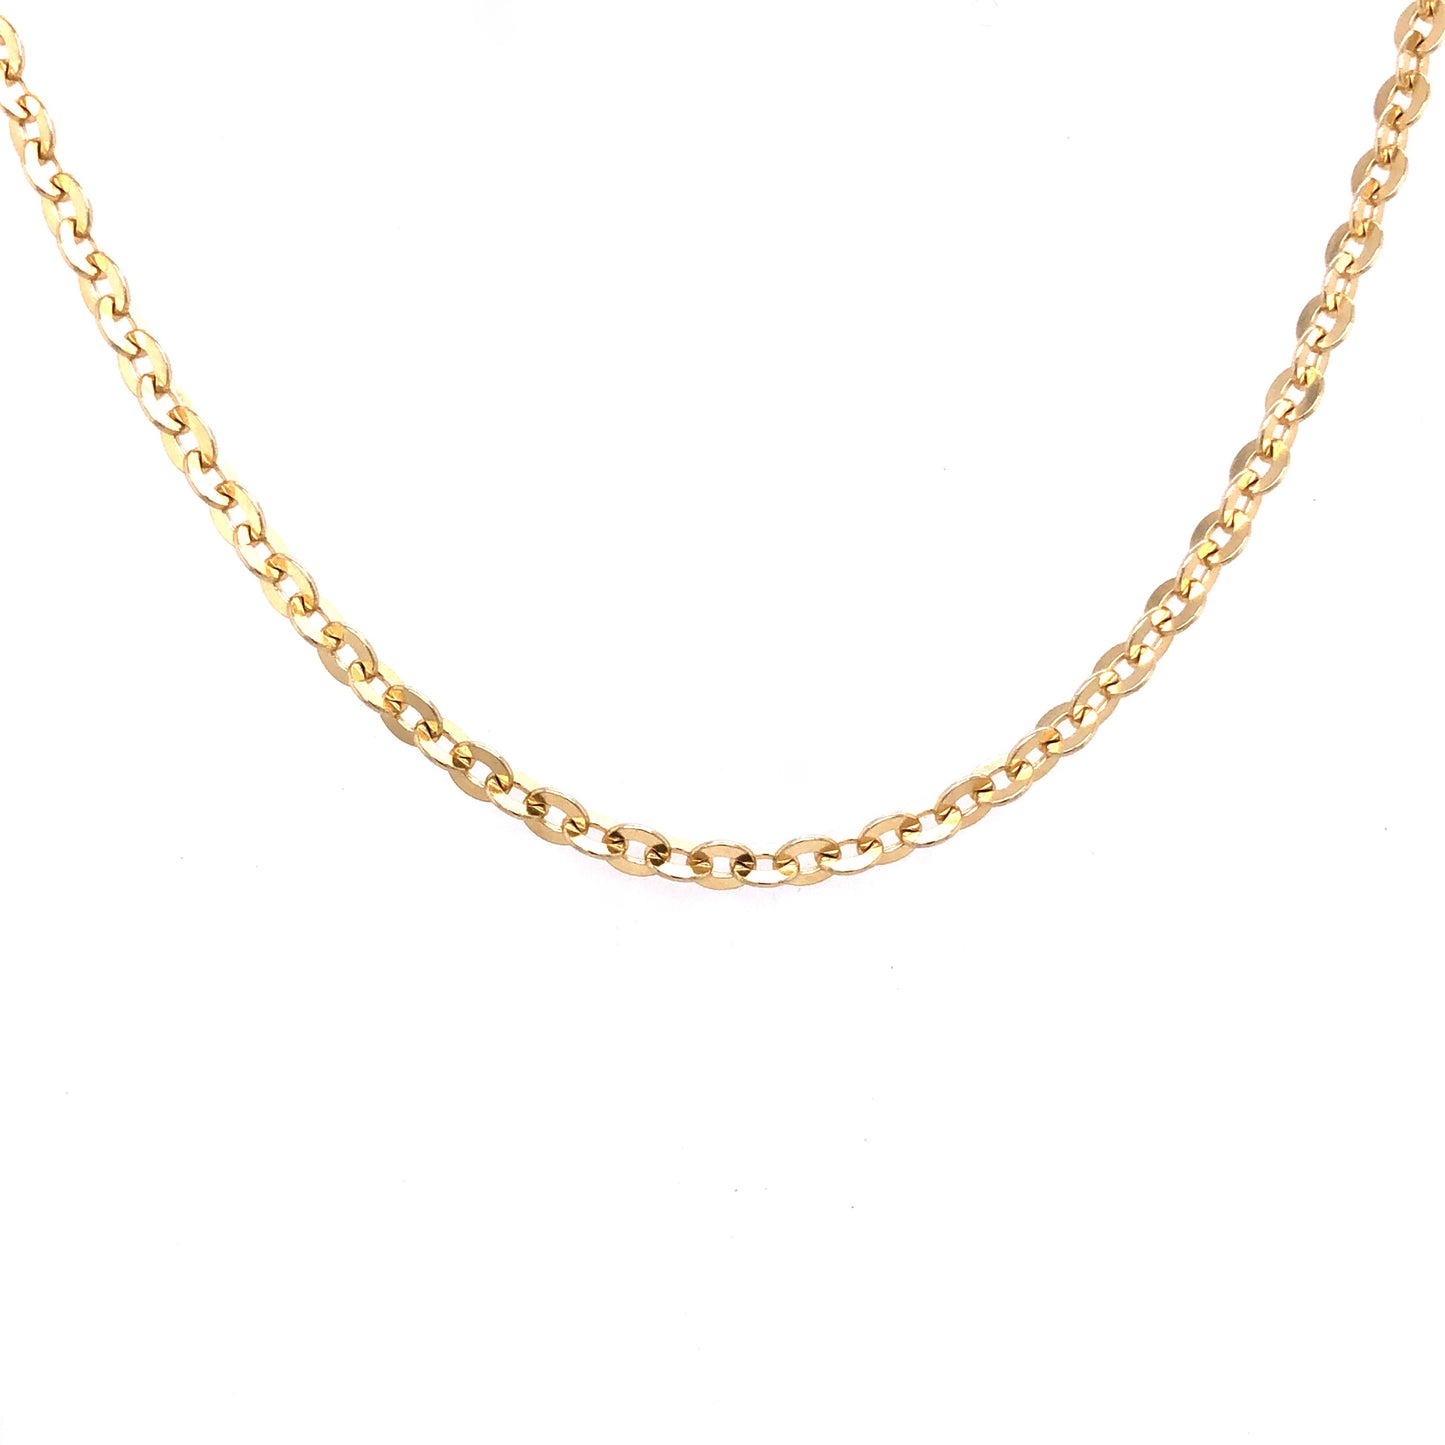 Halskette Gold 750 / 18k Rundankerkette Goldkette Anker